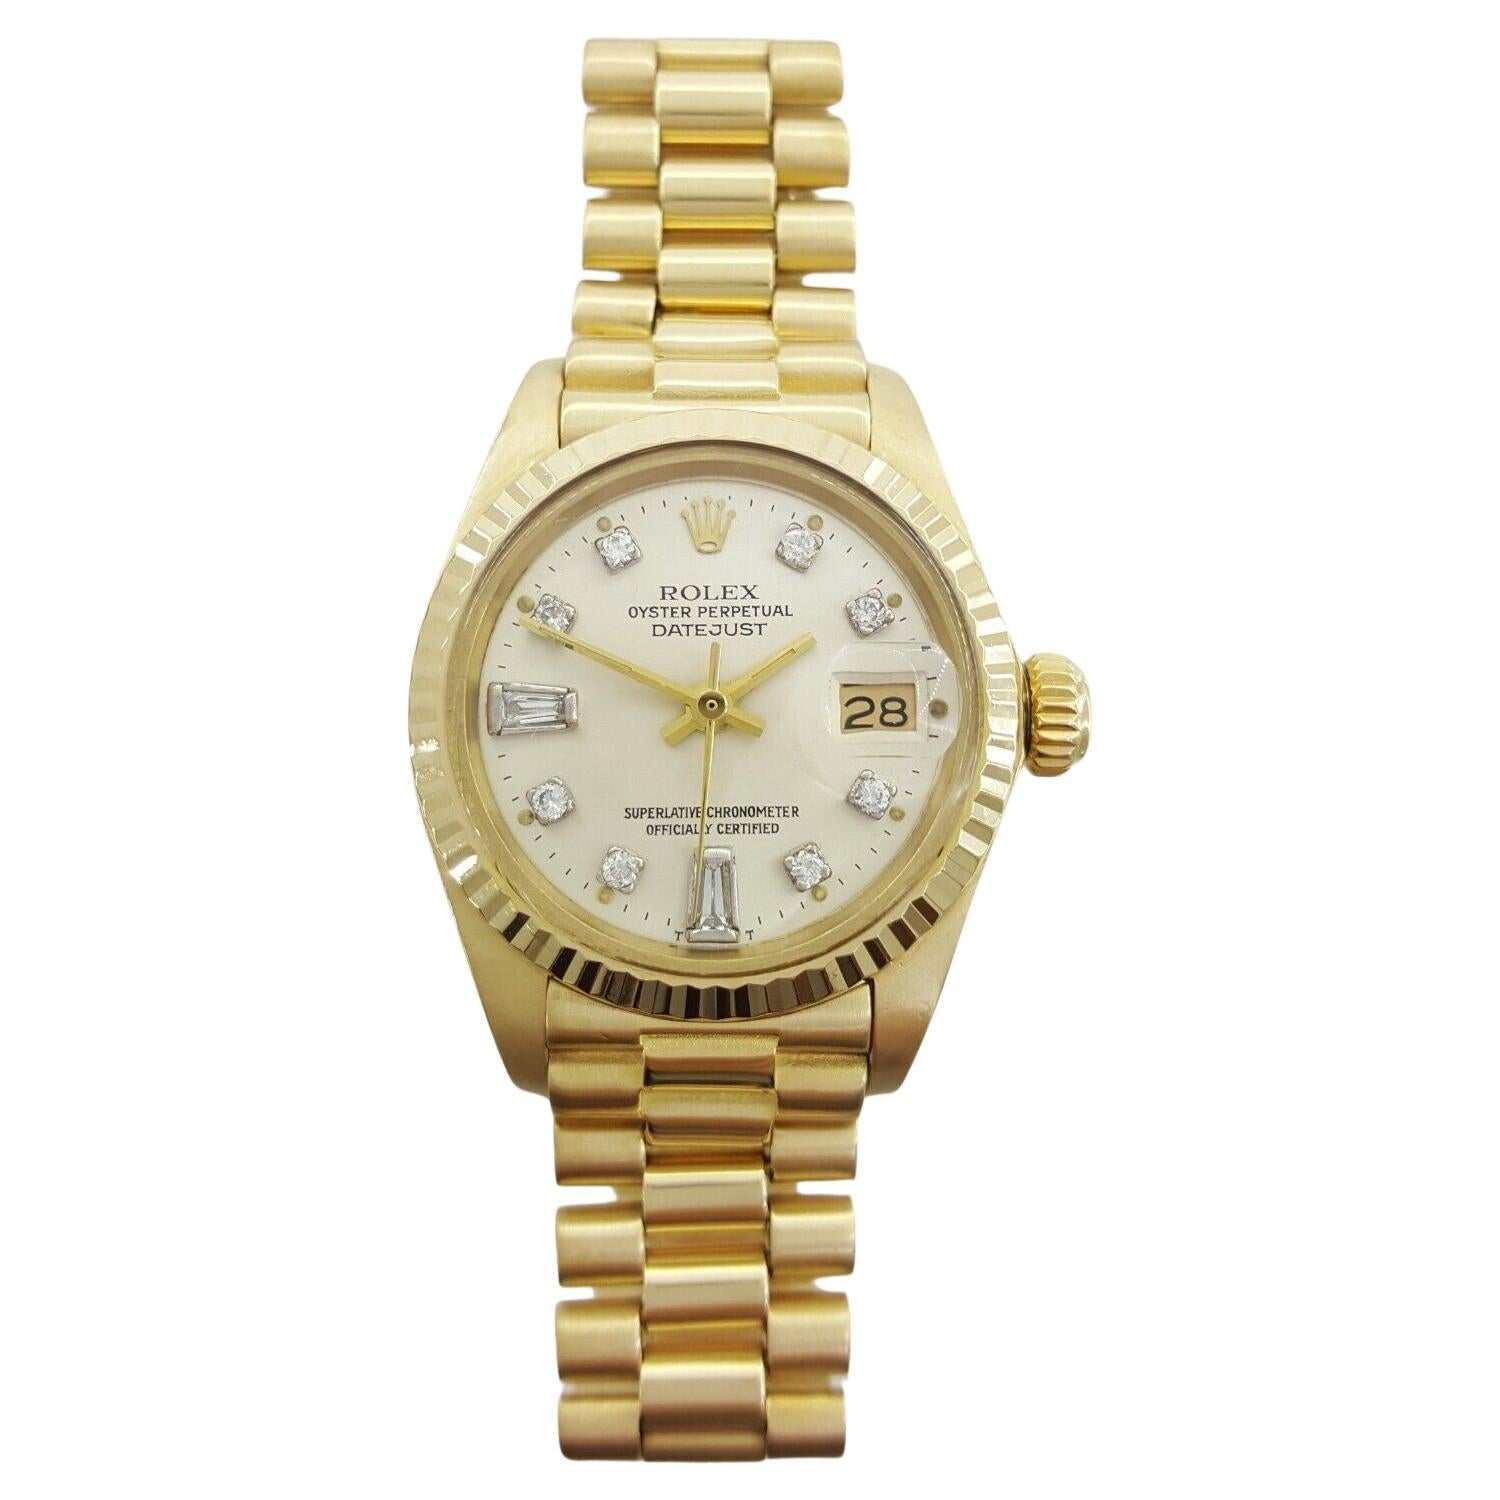 Montre Rolex Lady Date-Just en or jaune 18 carats 